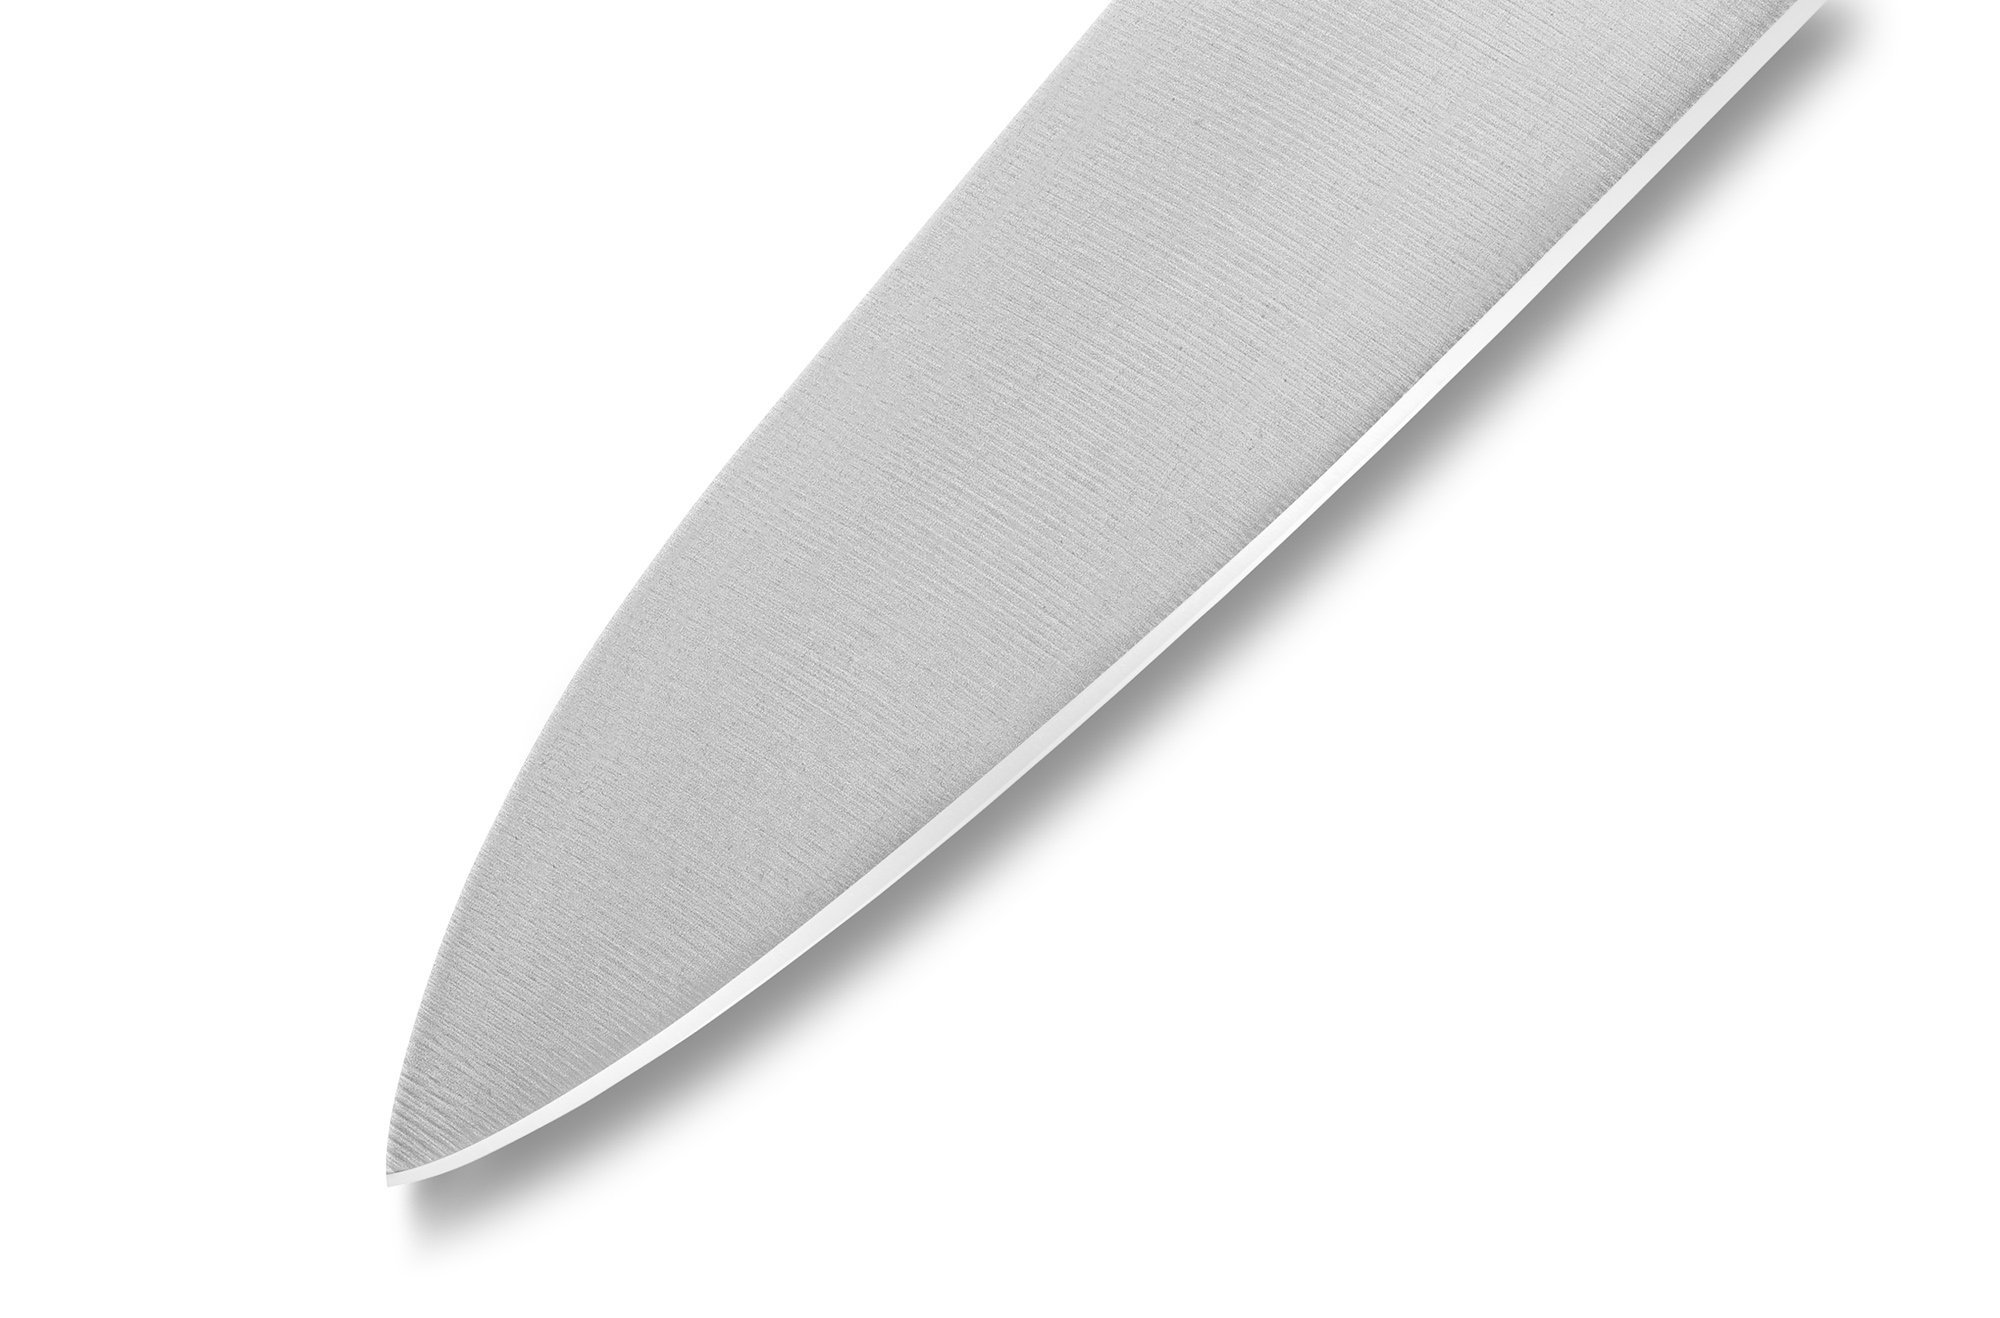 Нож кухонный Шеф Samura GOLF - SG-0085, сталь AUS-8, рукоять полипропилен, 221 мм - фото 7